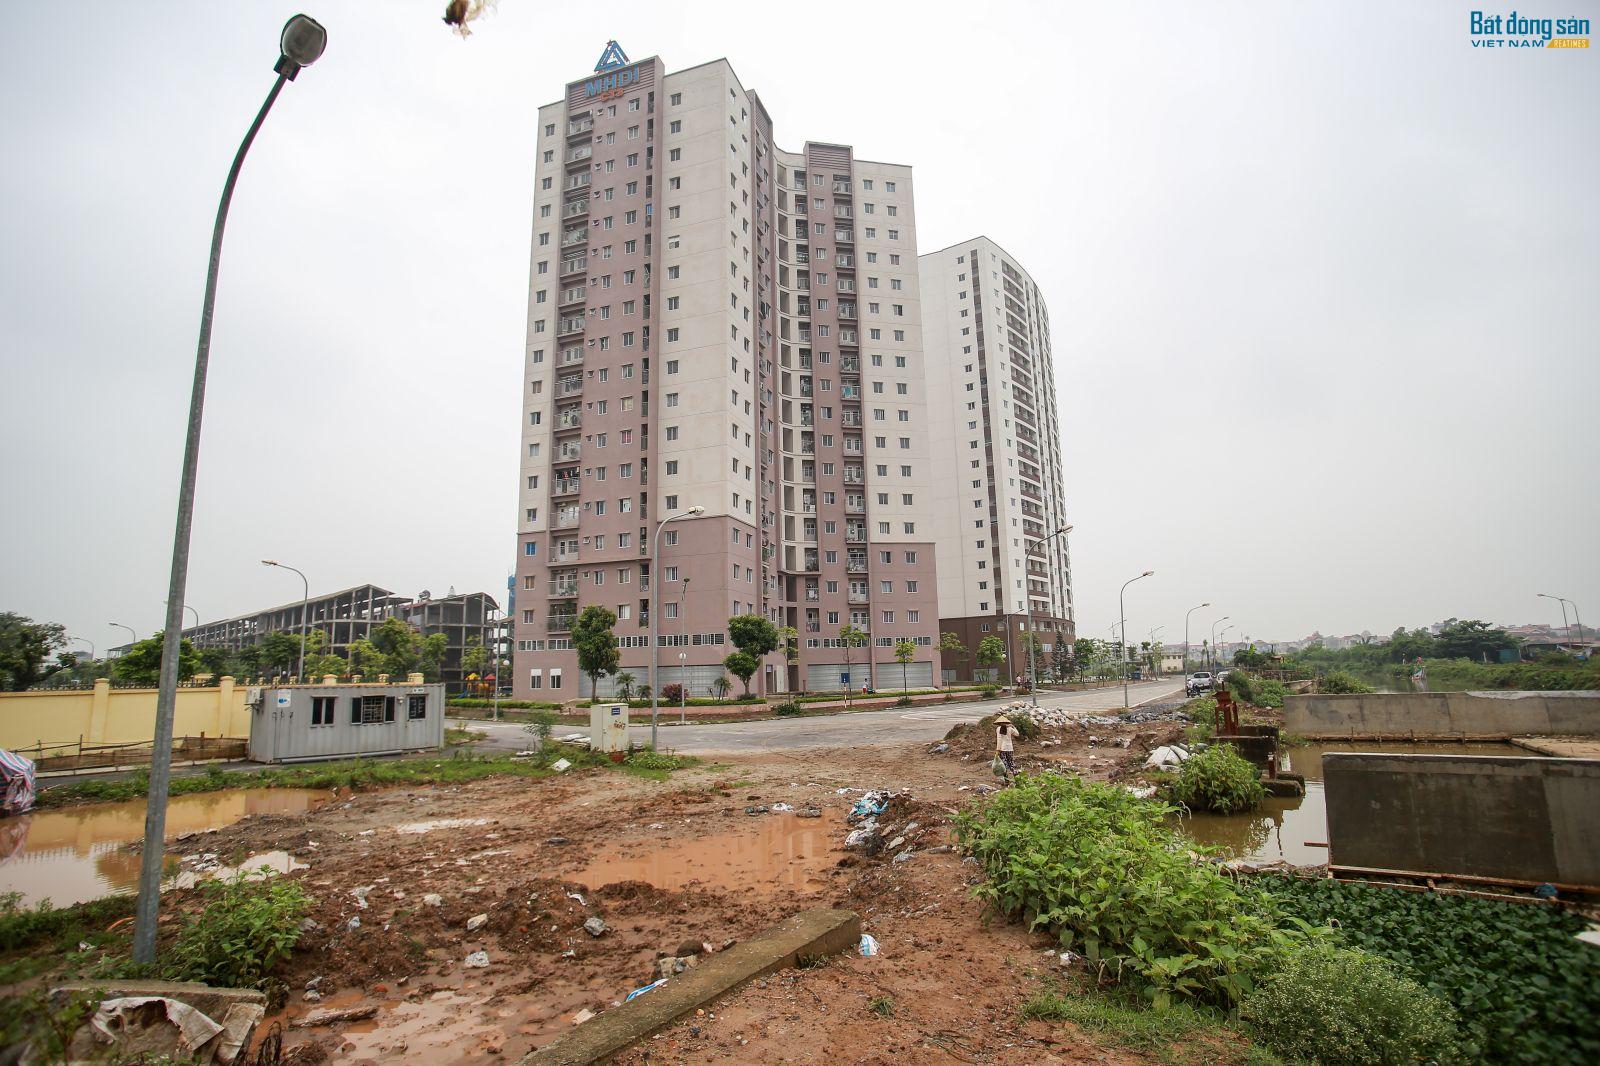 Hàng loạt đất nông nghiệp trên địa bàn phường Yên Nghĩa trở thành đất dự án